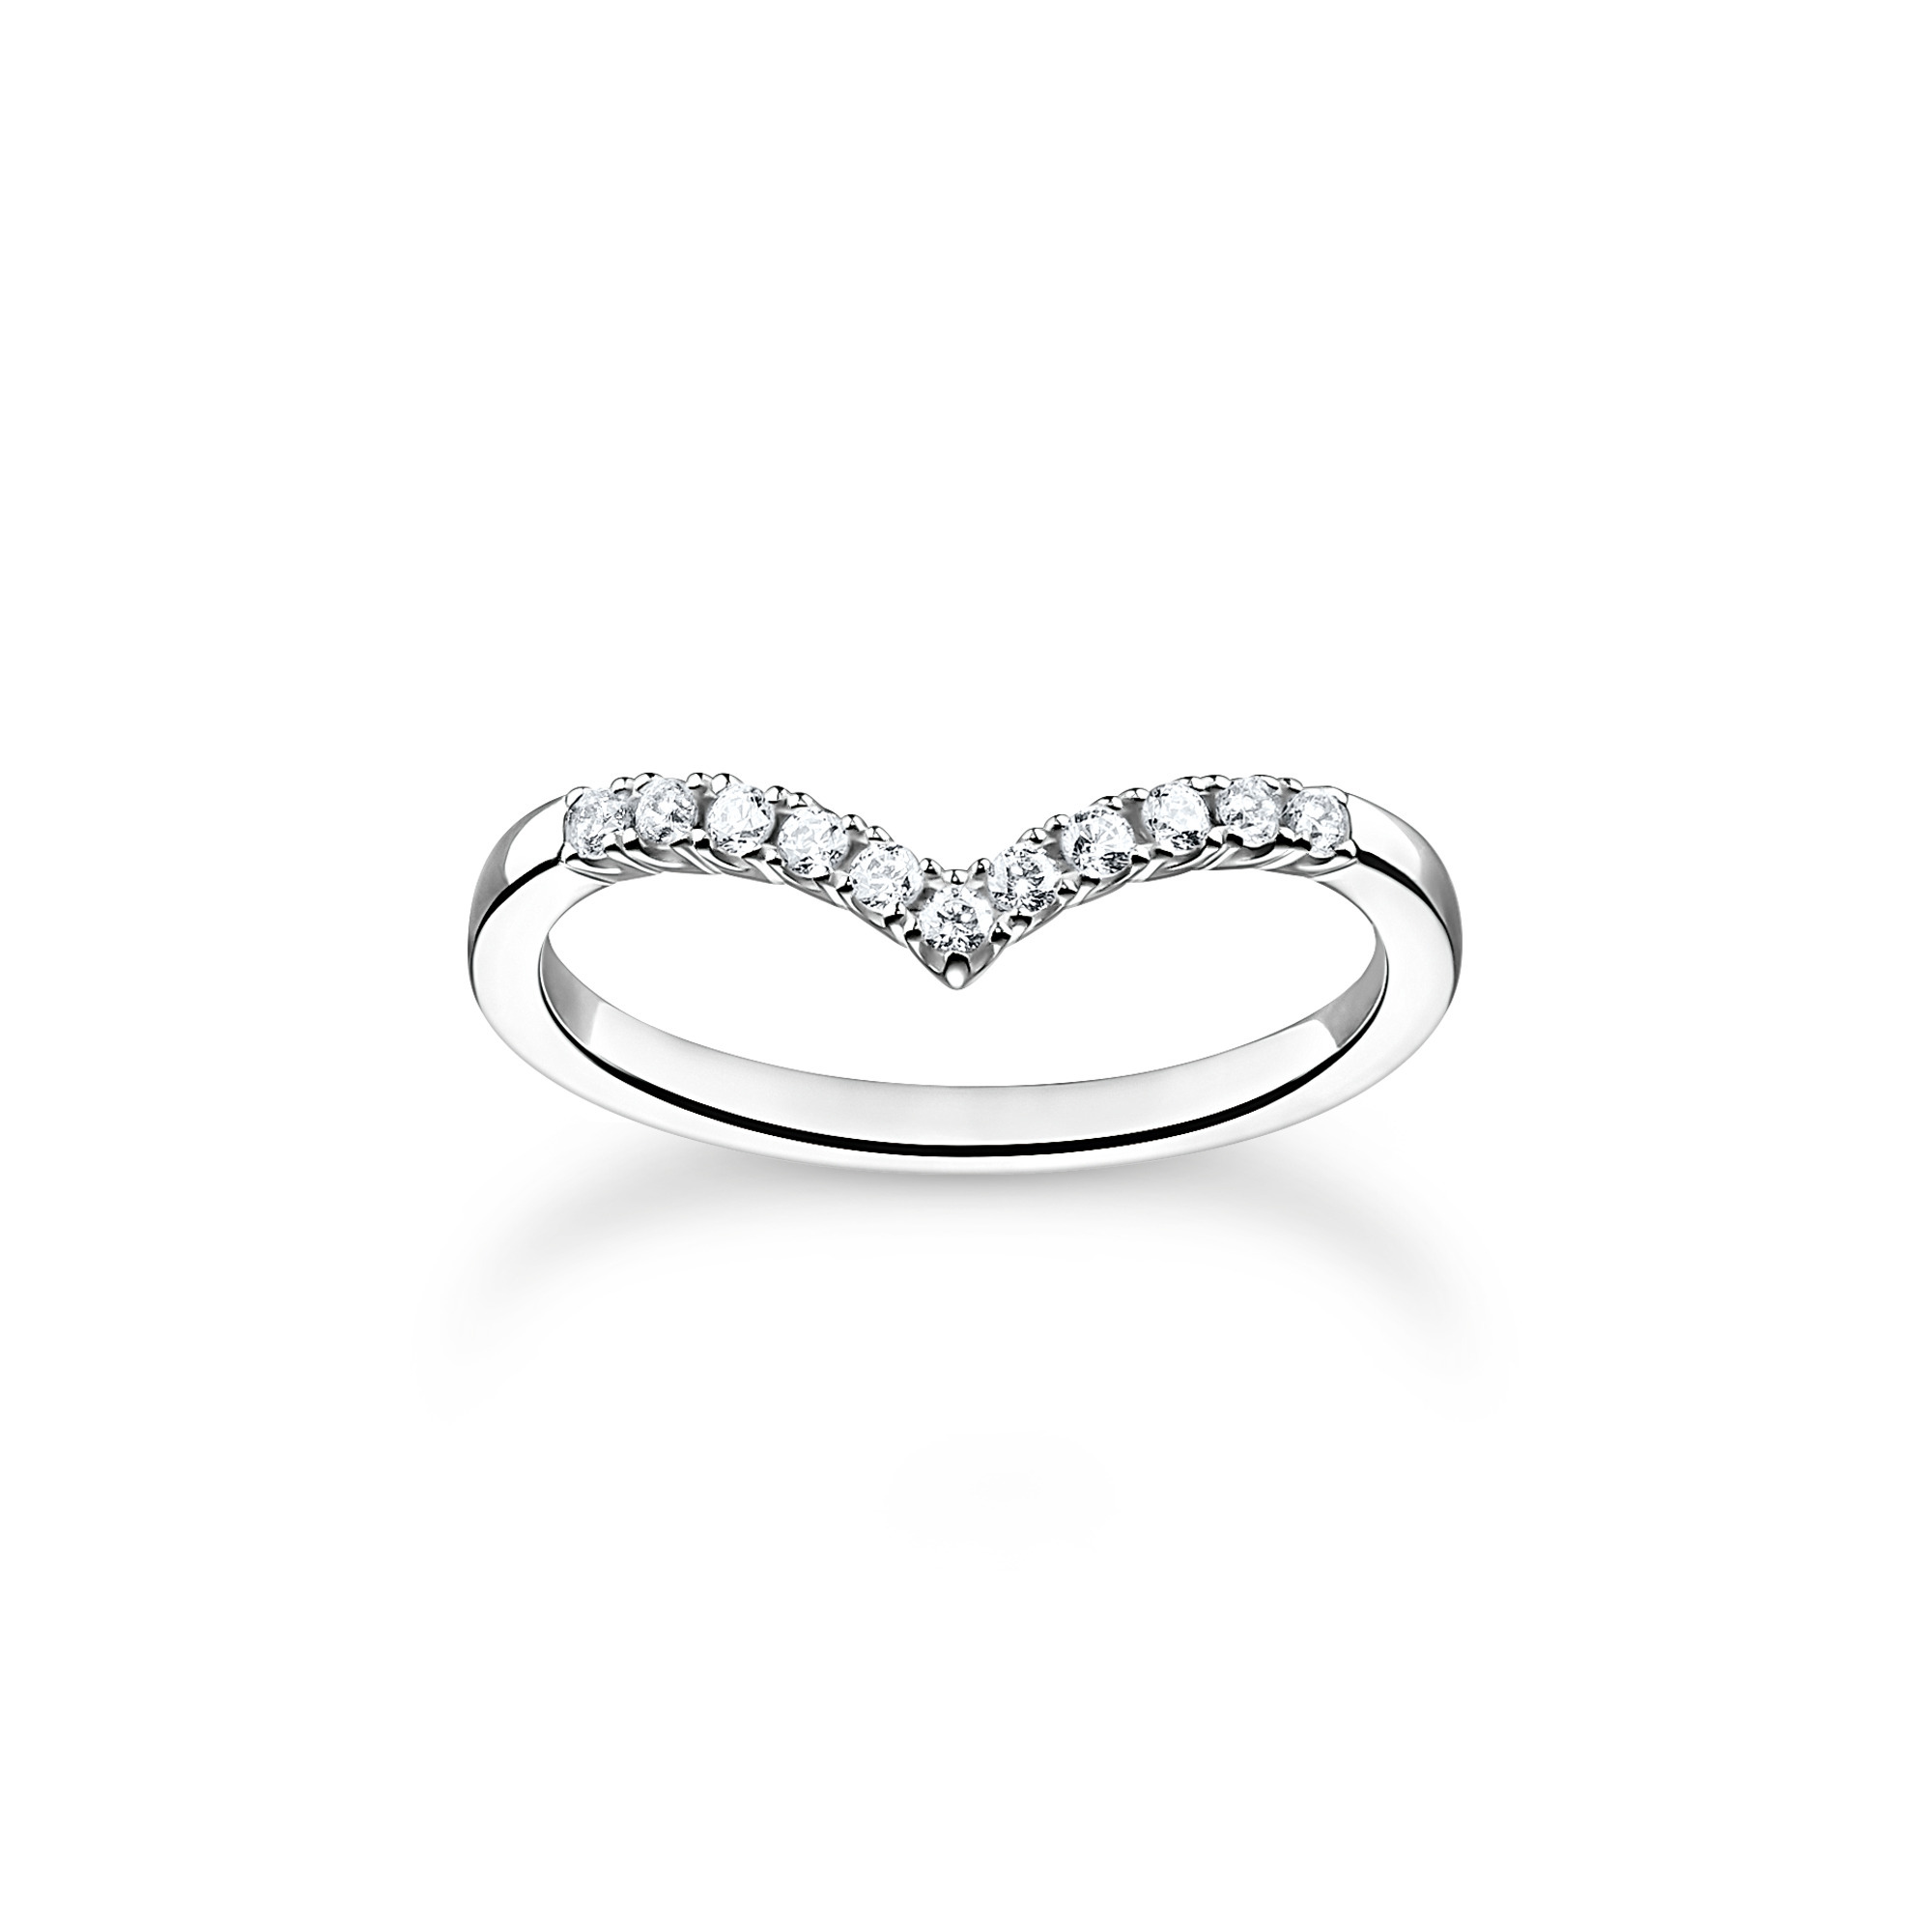 Thomas Sabo Ring Silber TR2394 online günstig kaufen bei Juwelierwelt.de ©★Gratisversand★Paypal ★trusted shops★